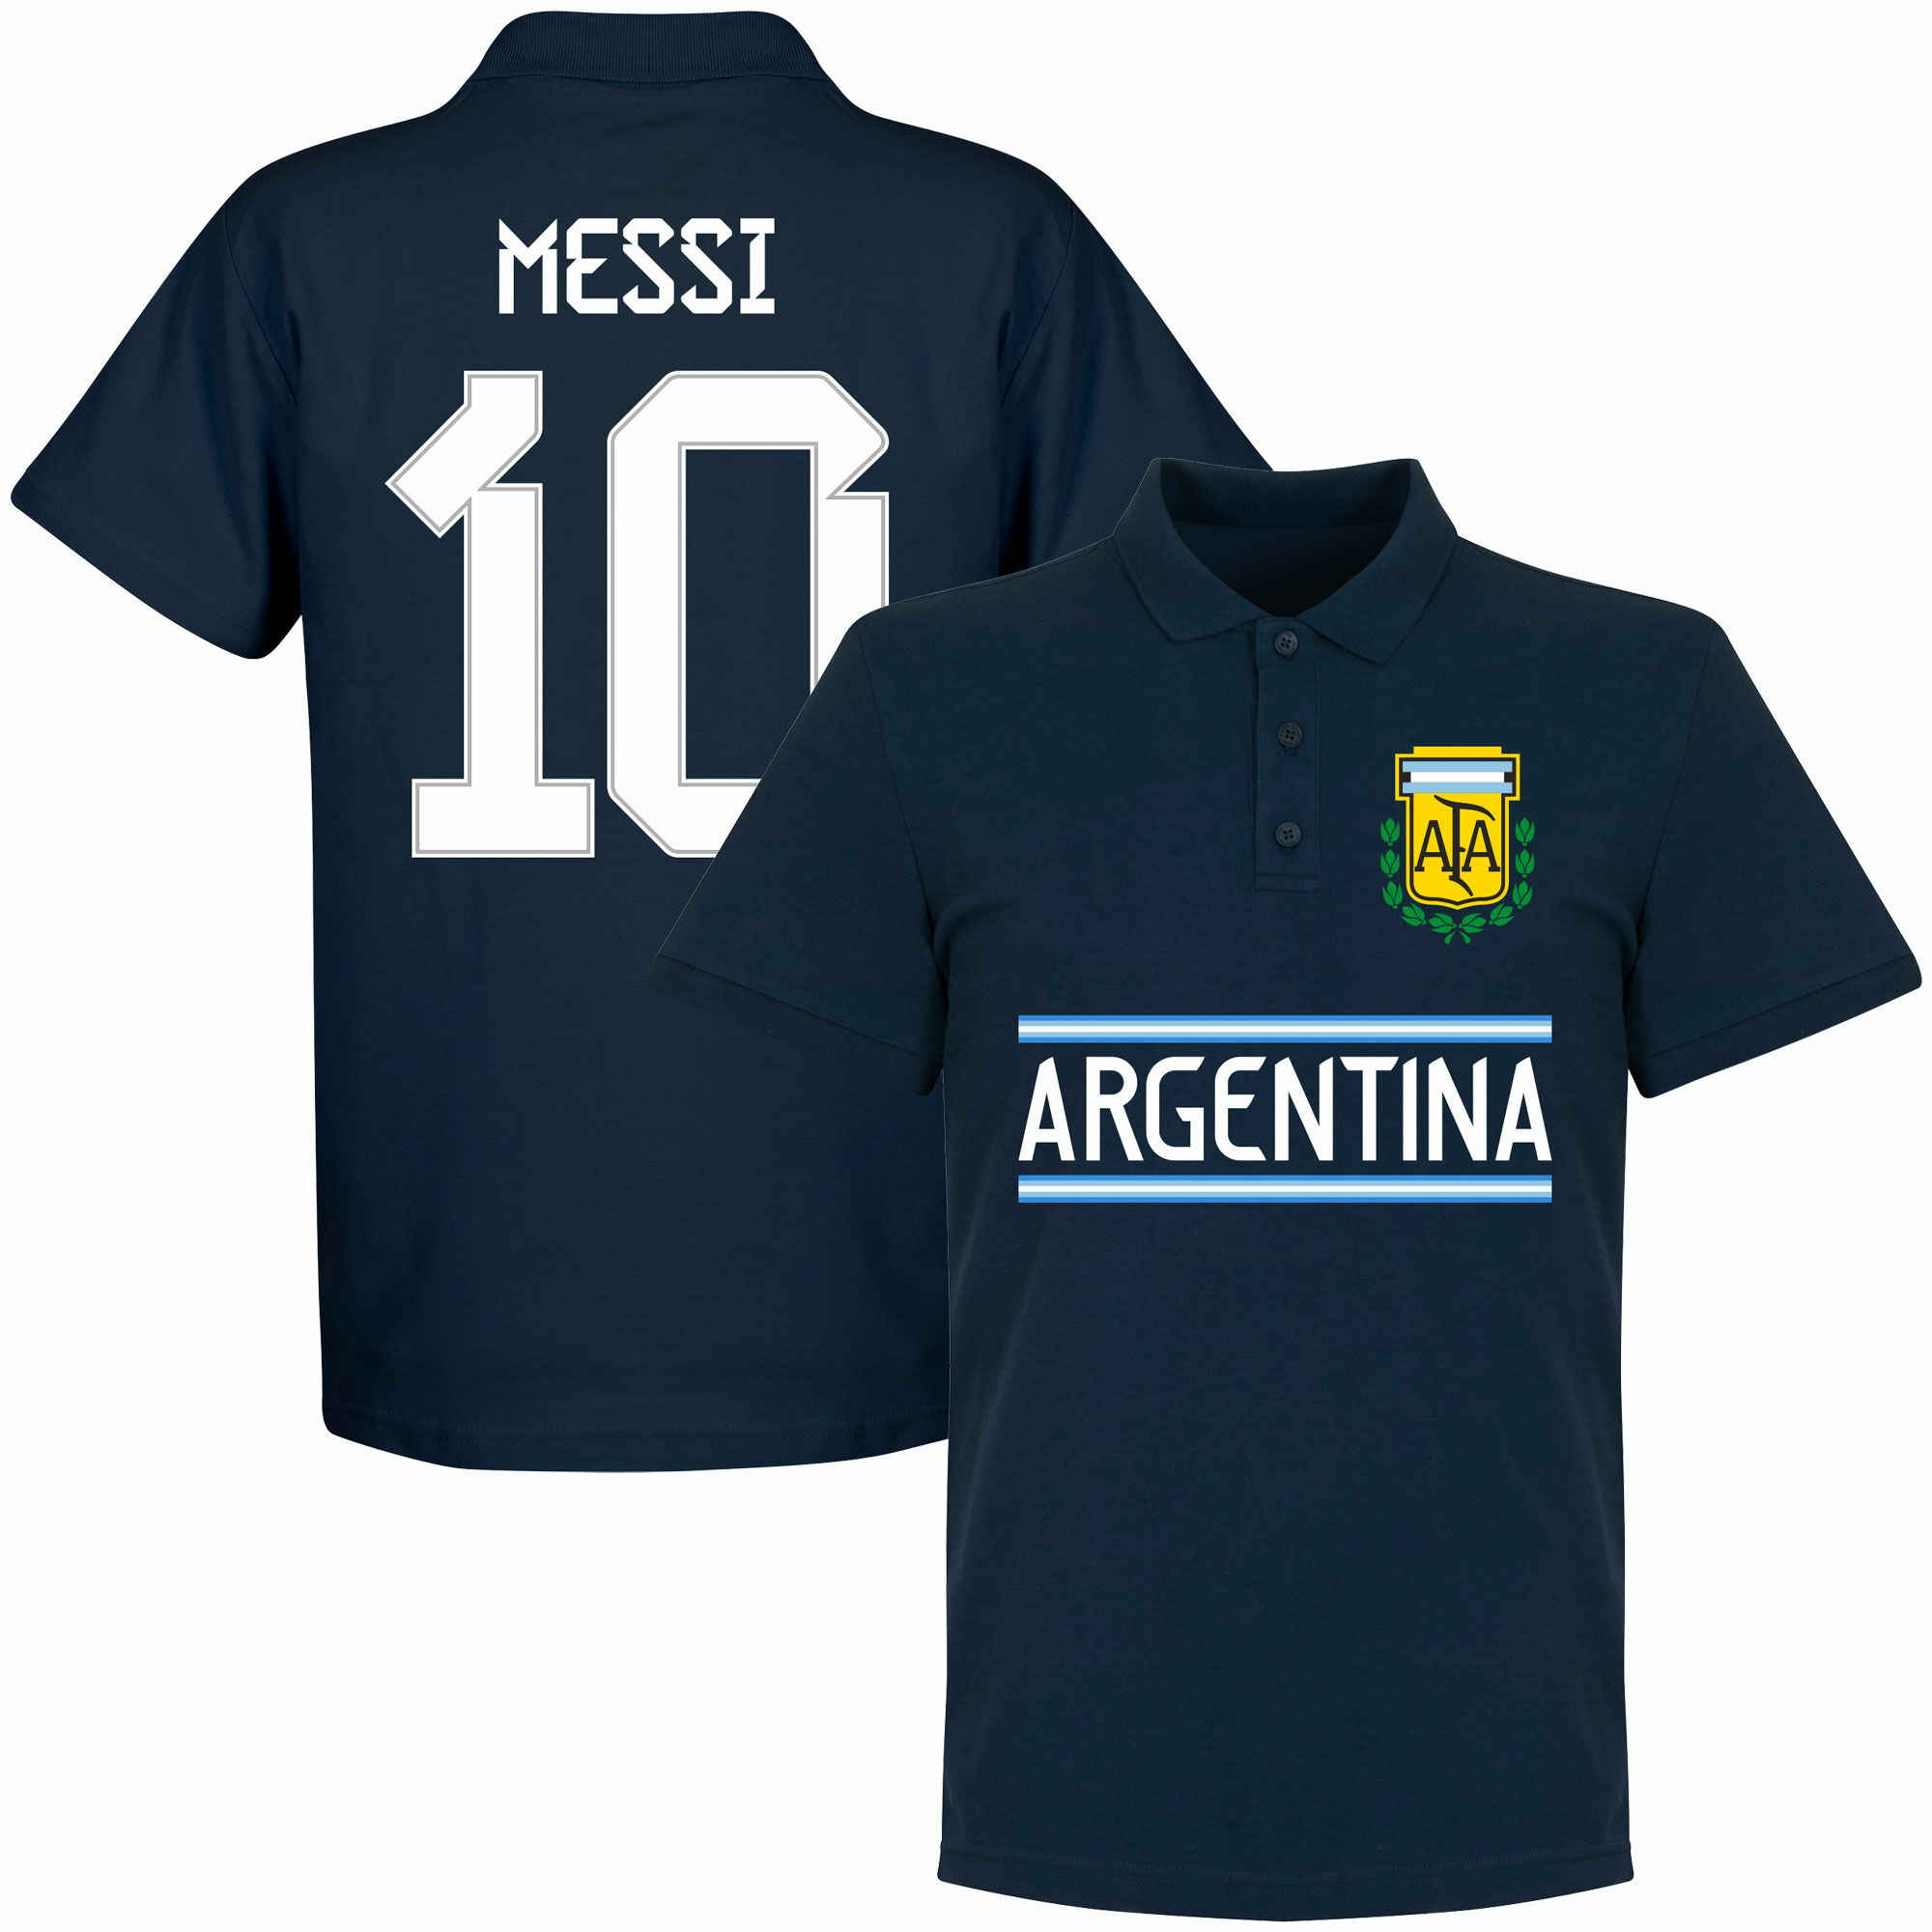 Argentina - Tričko s límečkem - číslo 10, modré, Lionel Messi